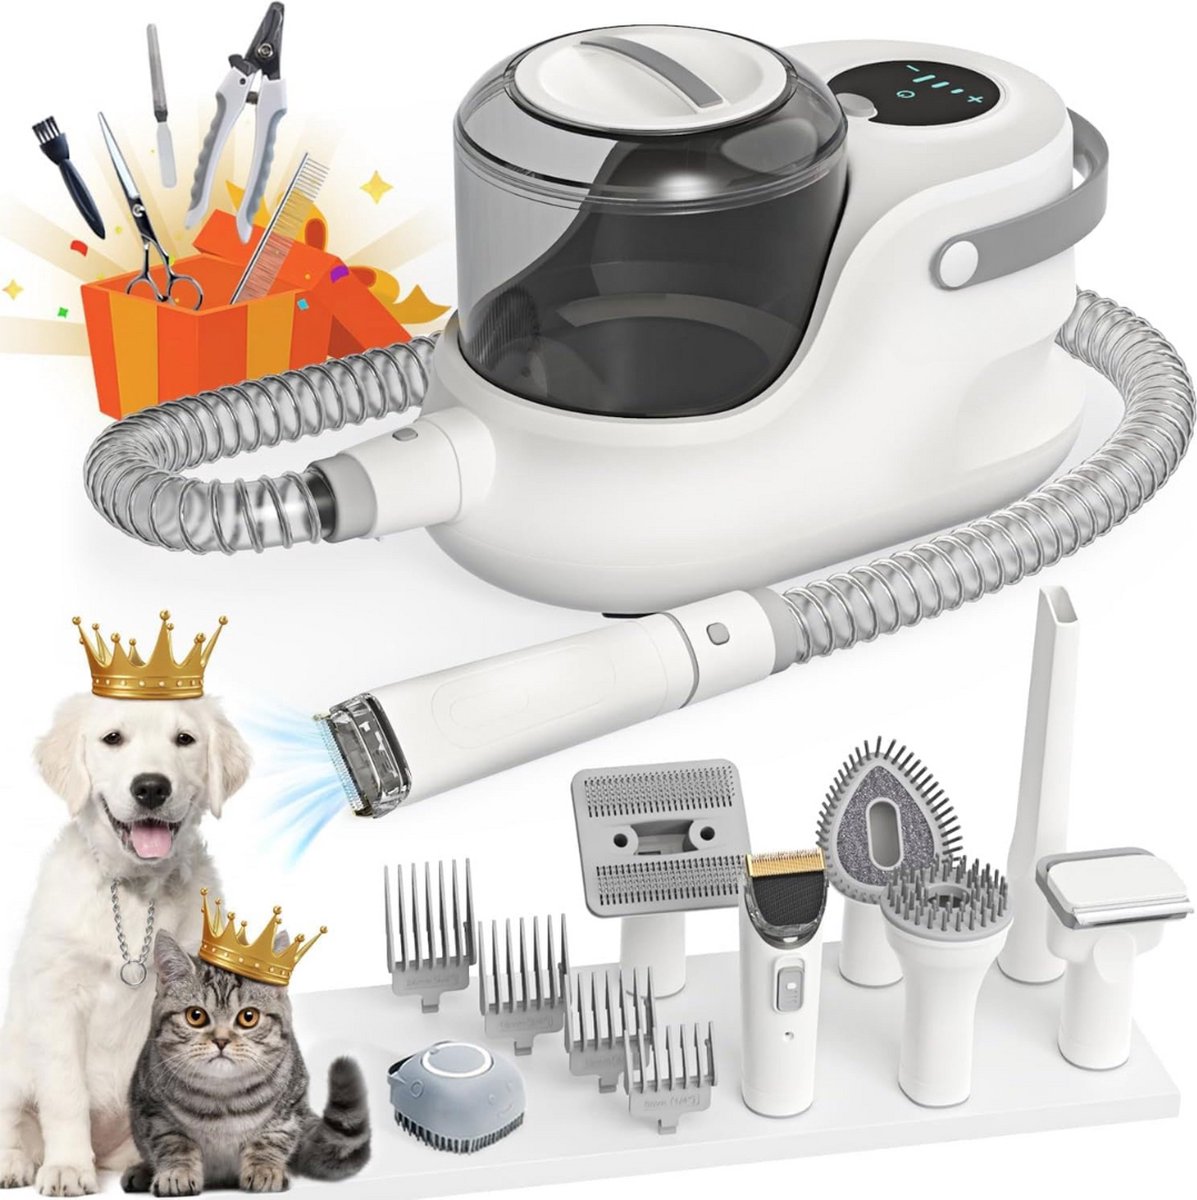 Hondentondeuse Met Stofzuiger - Hondentondeuse - Grooming Kit Voor Honden